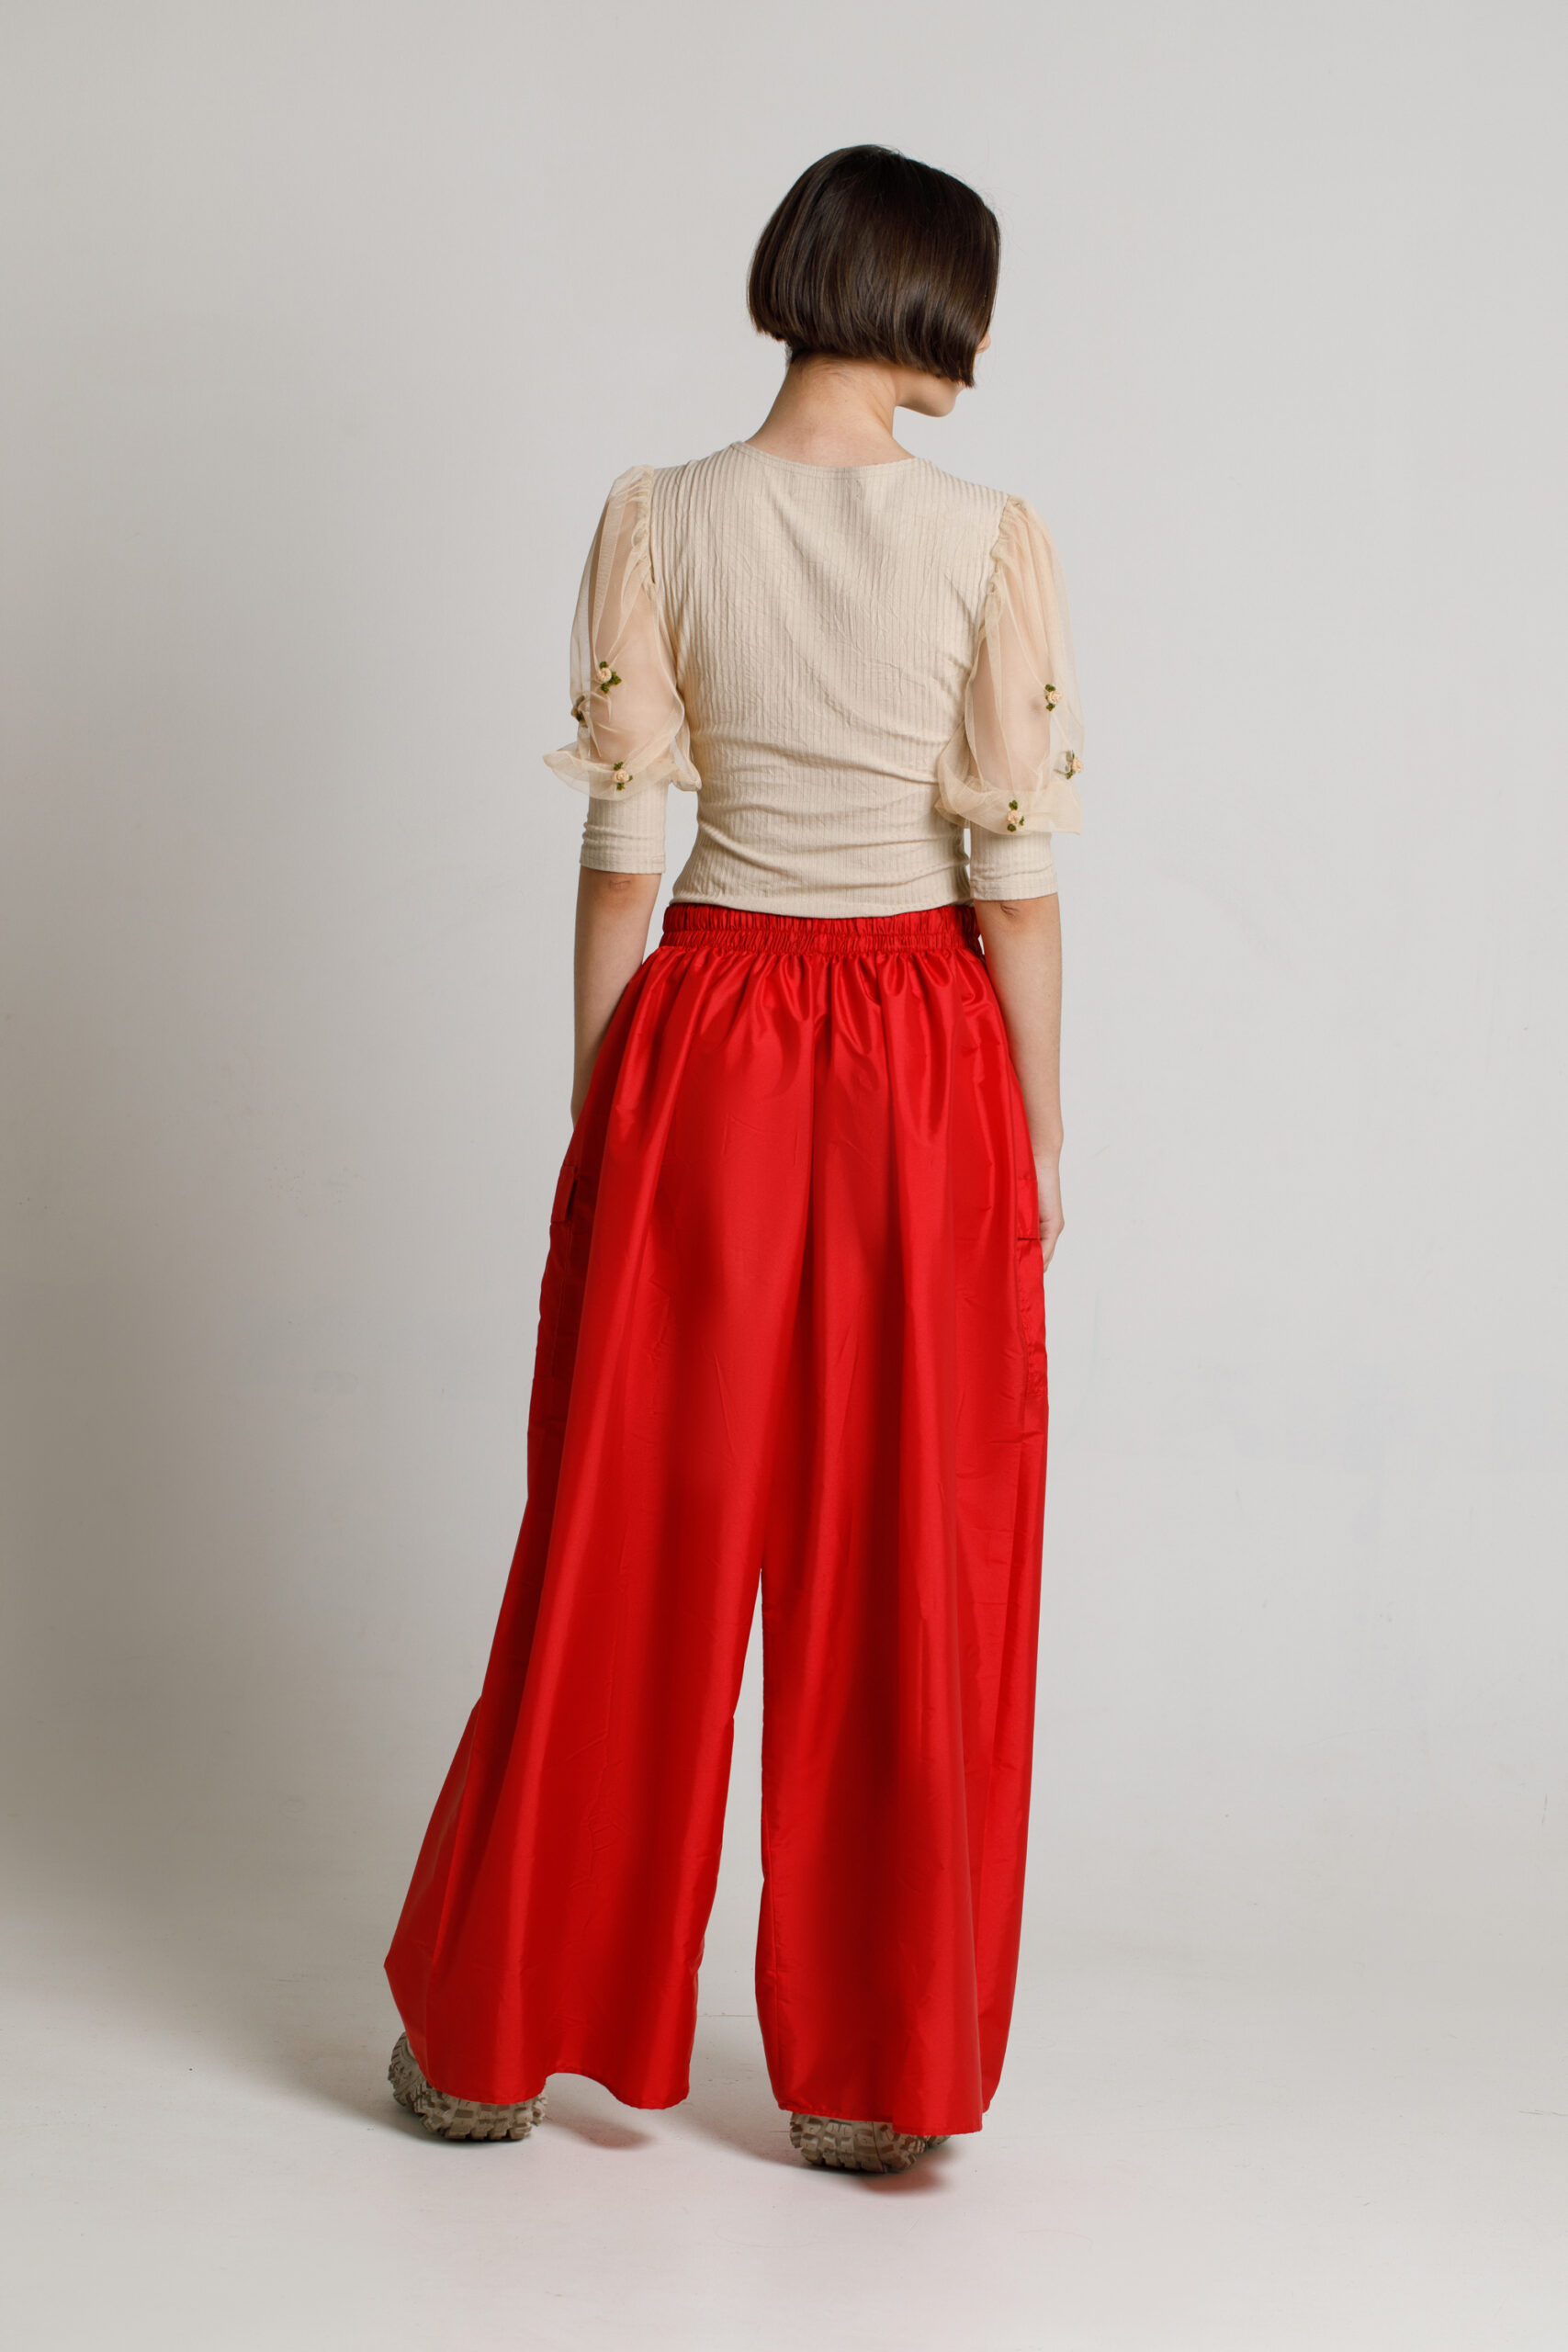 Pantalon PUFFER casual rosu din fas. Materiale naturale, design unicat, cu broderie si aplicatii handmade